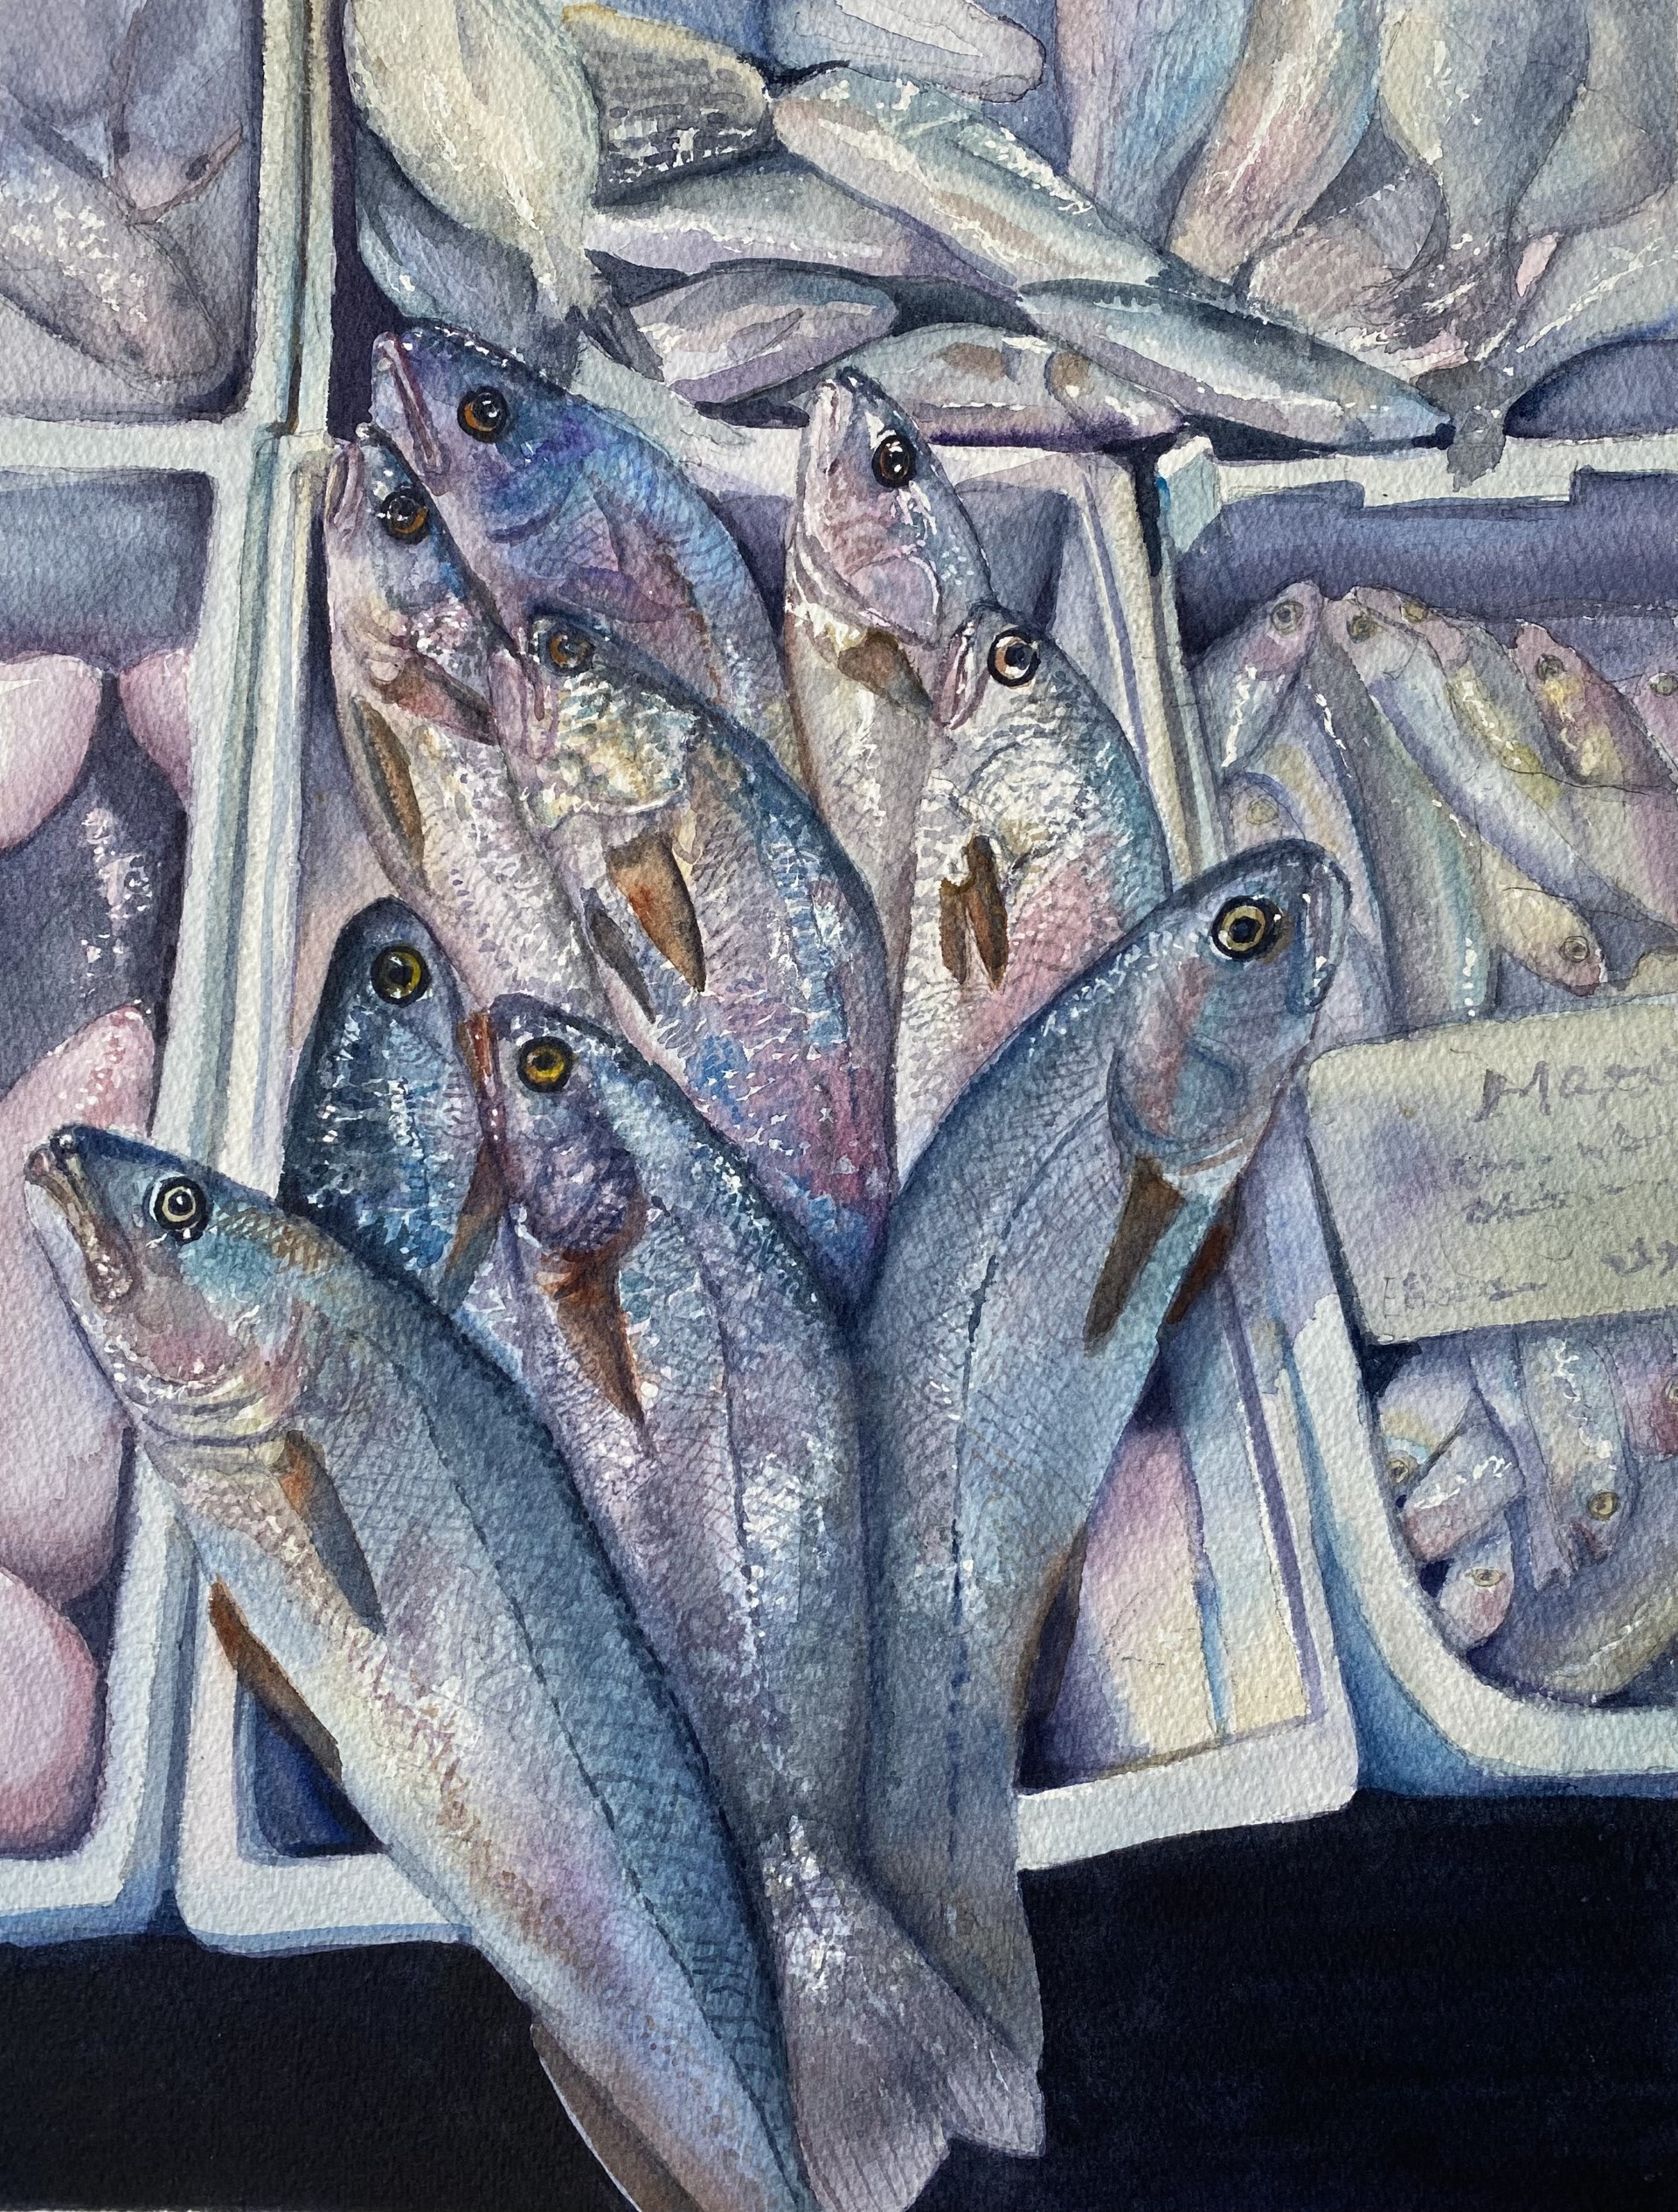 "Fish at the Market"